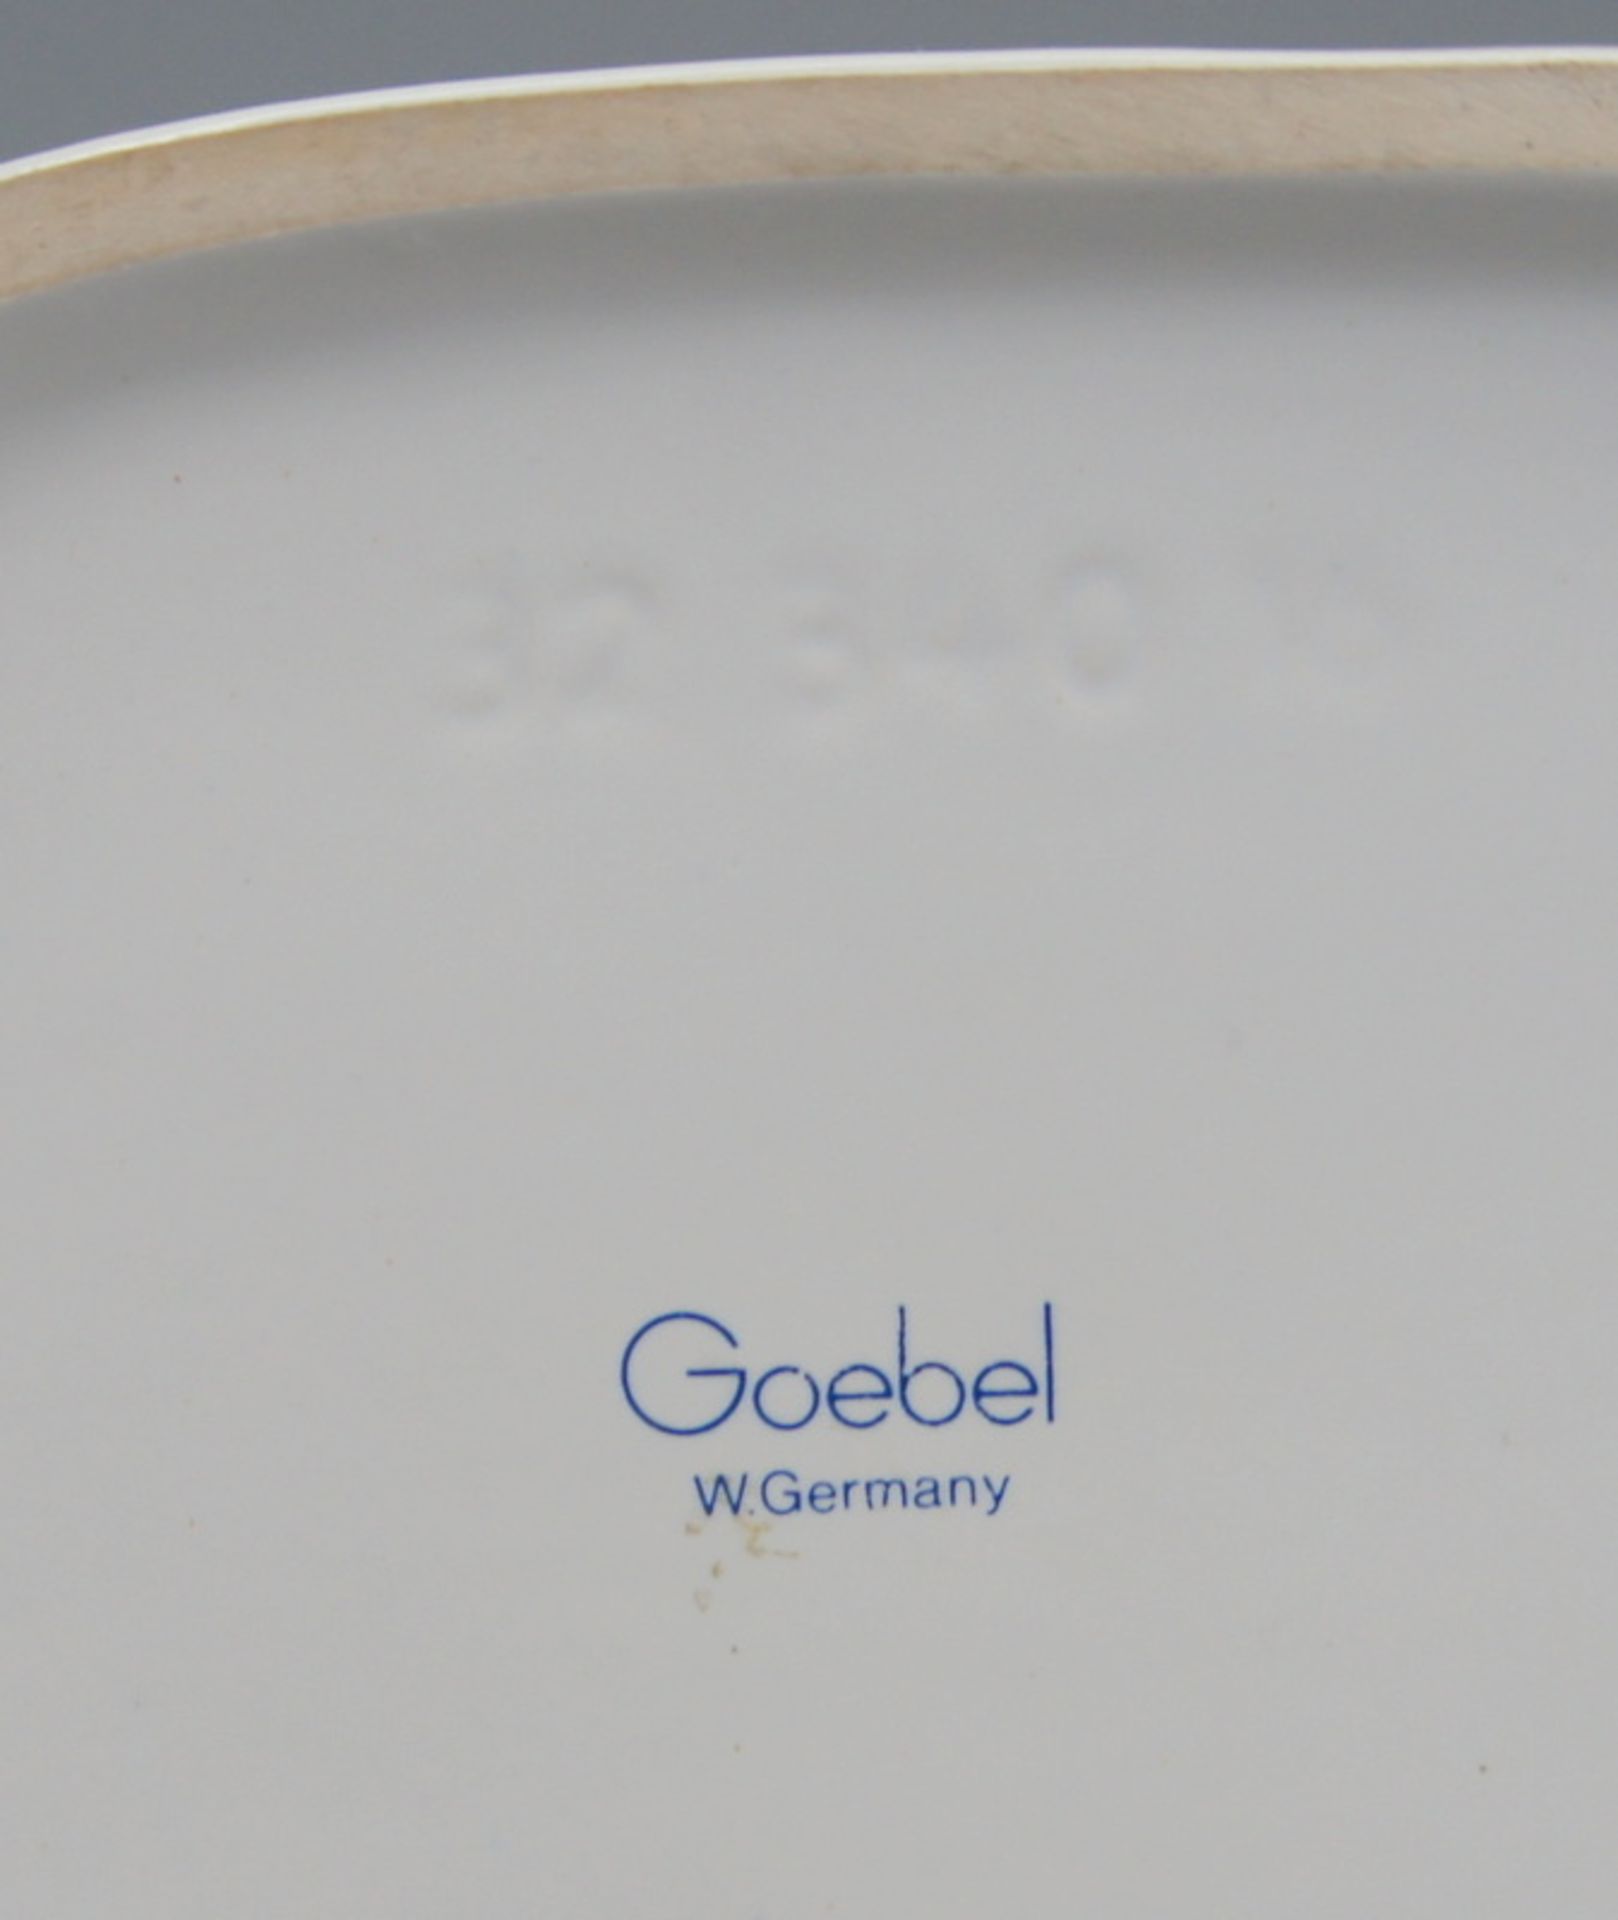 Goebel, Trabendes KaltblutPorzellan, am Boden mit blauer "Goebel Germany" Marke. Weißfigur eines - Image 3 of 3